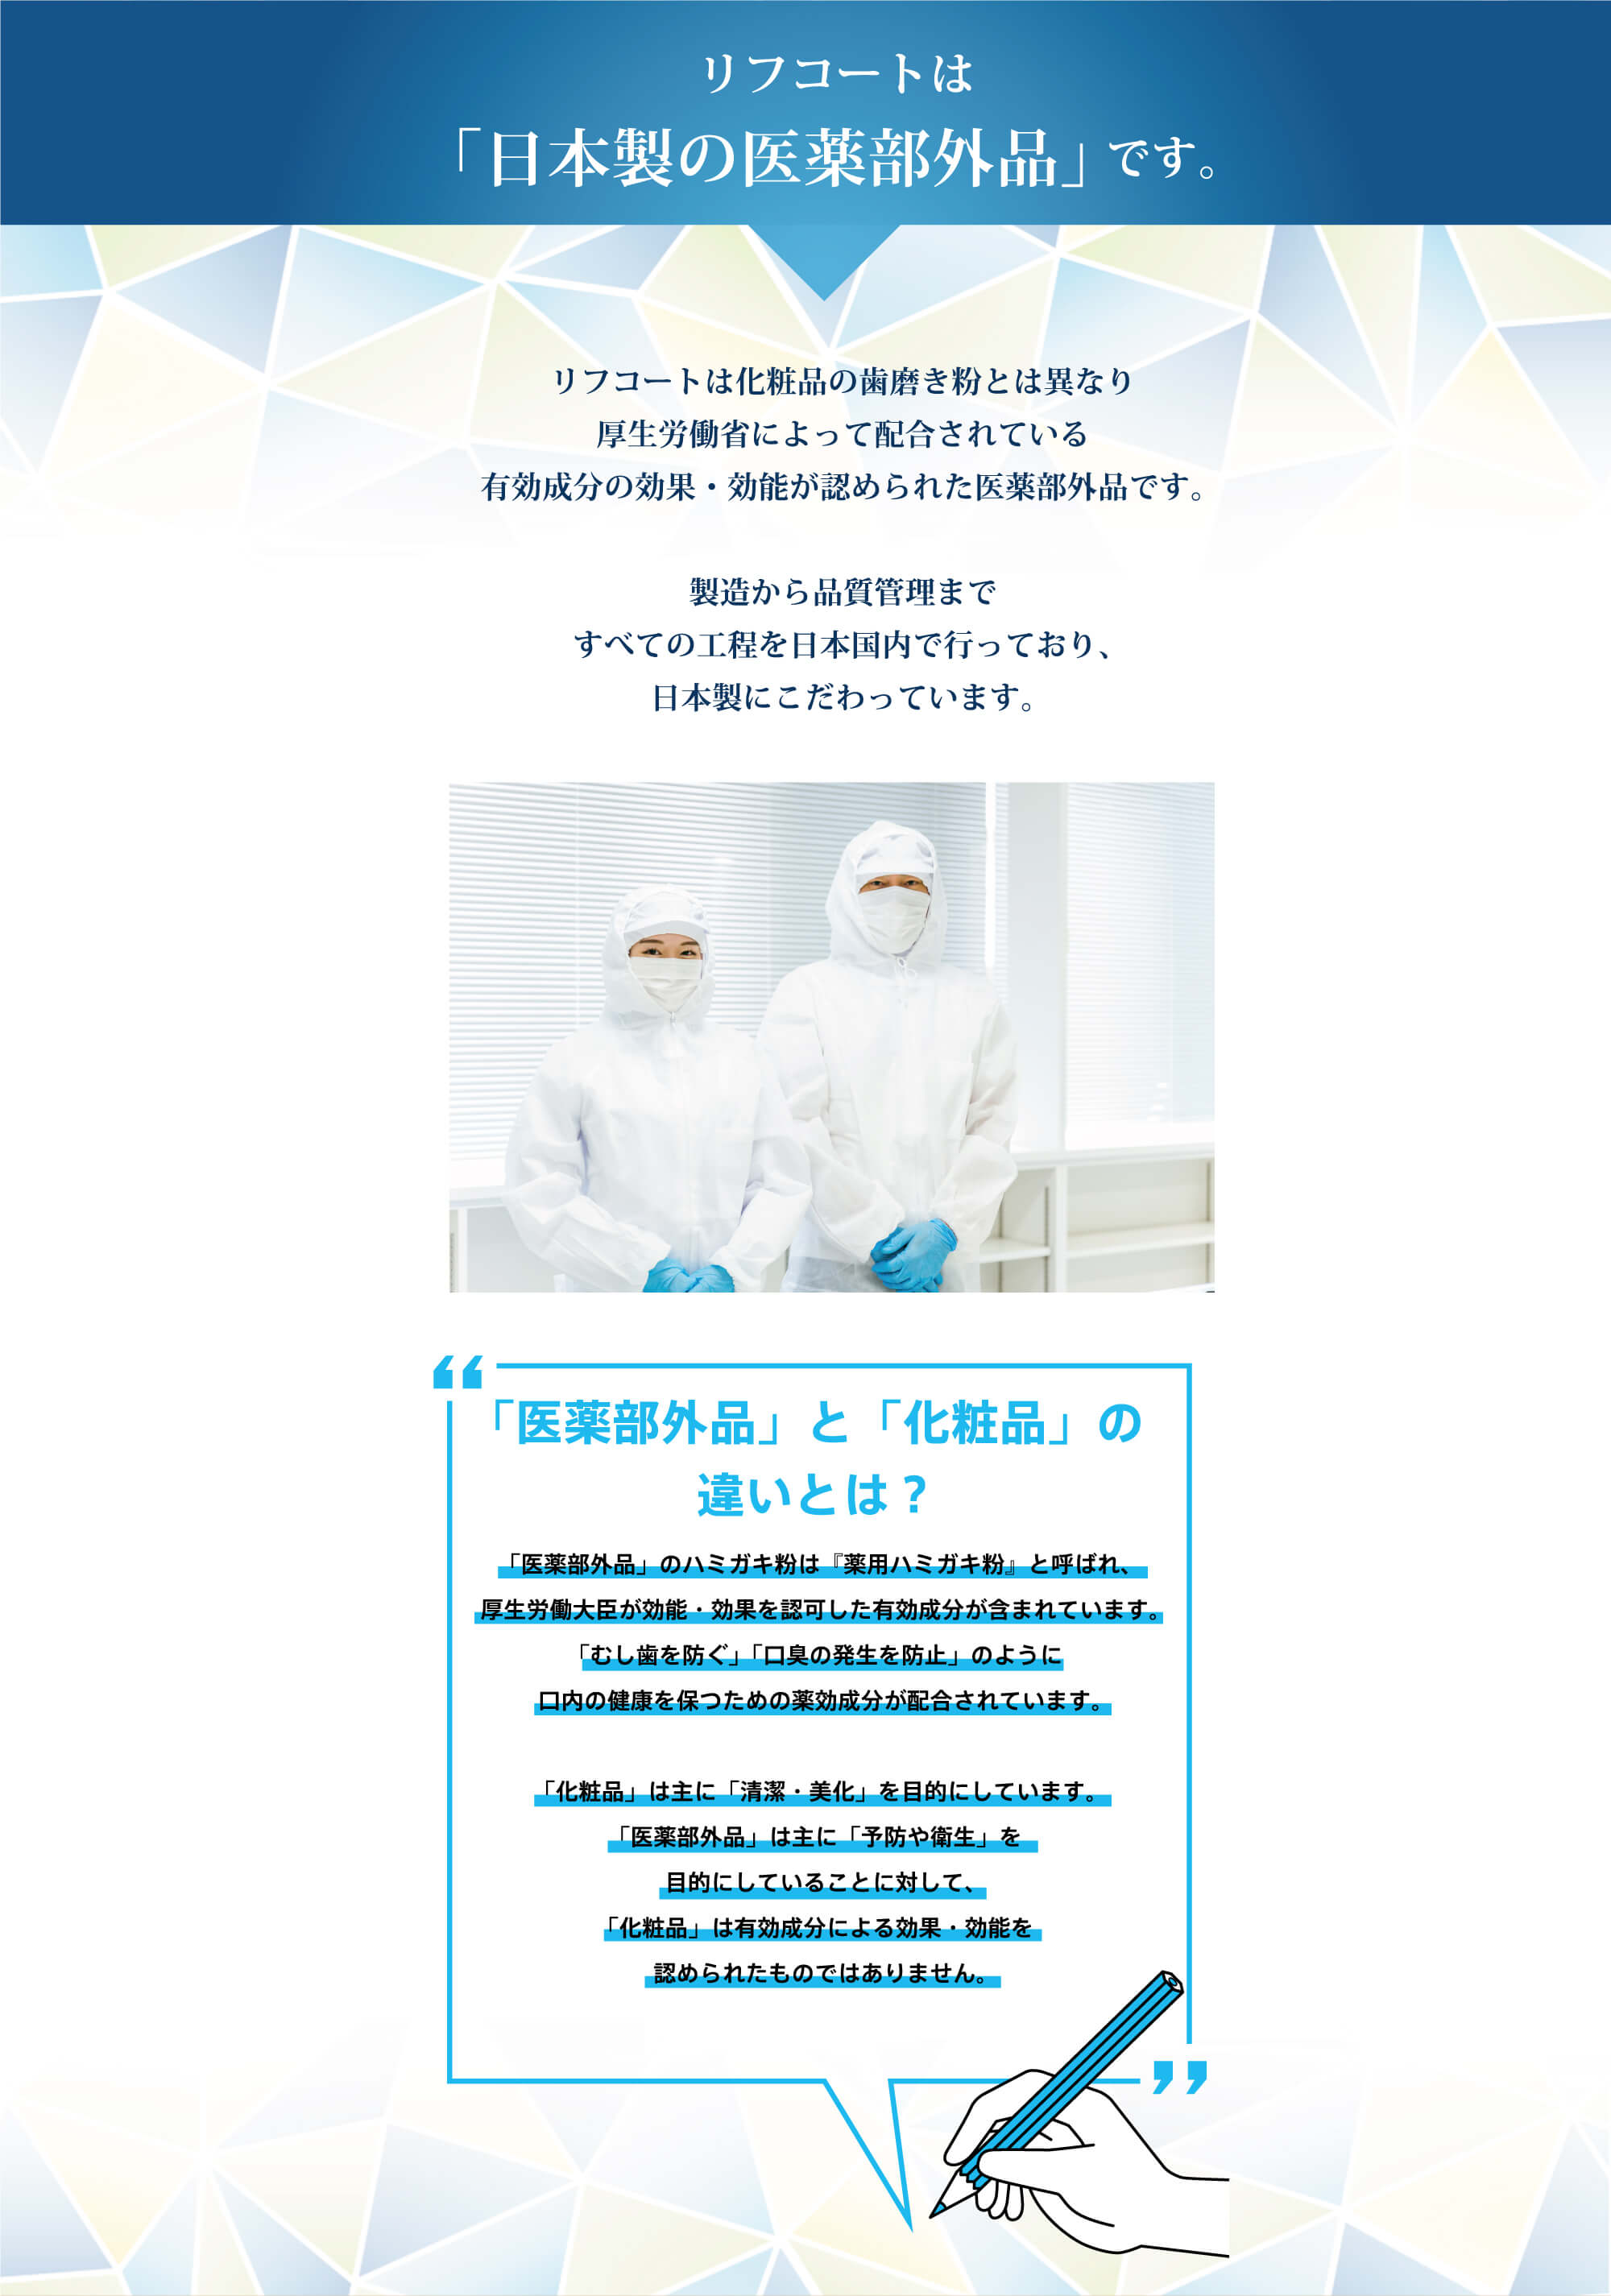 リフコートは『日本製の医薬部外品』です。